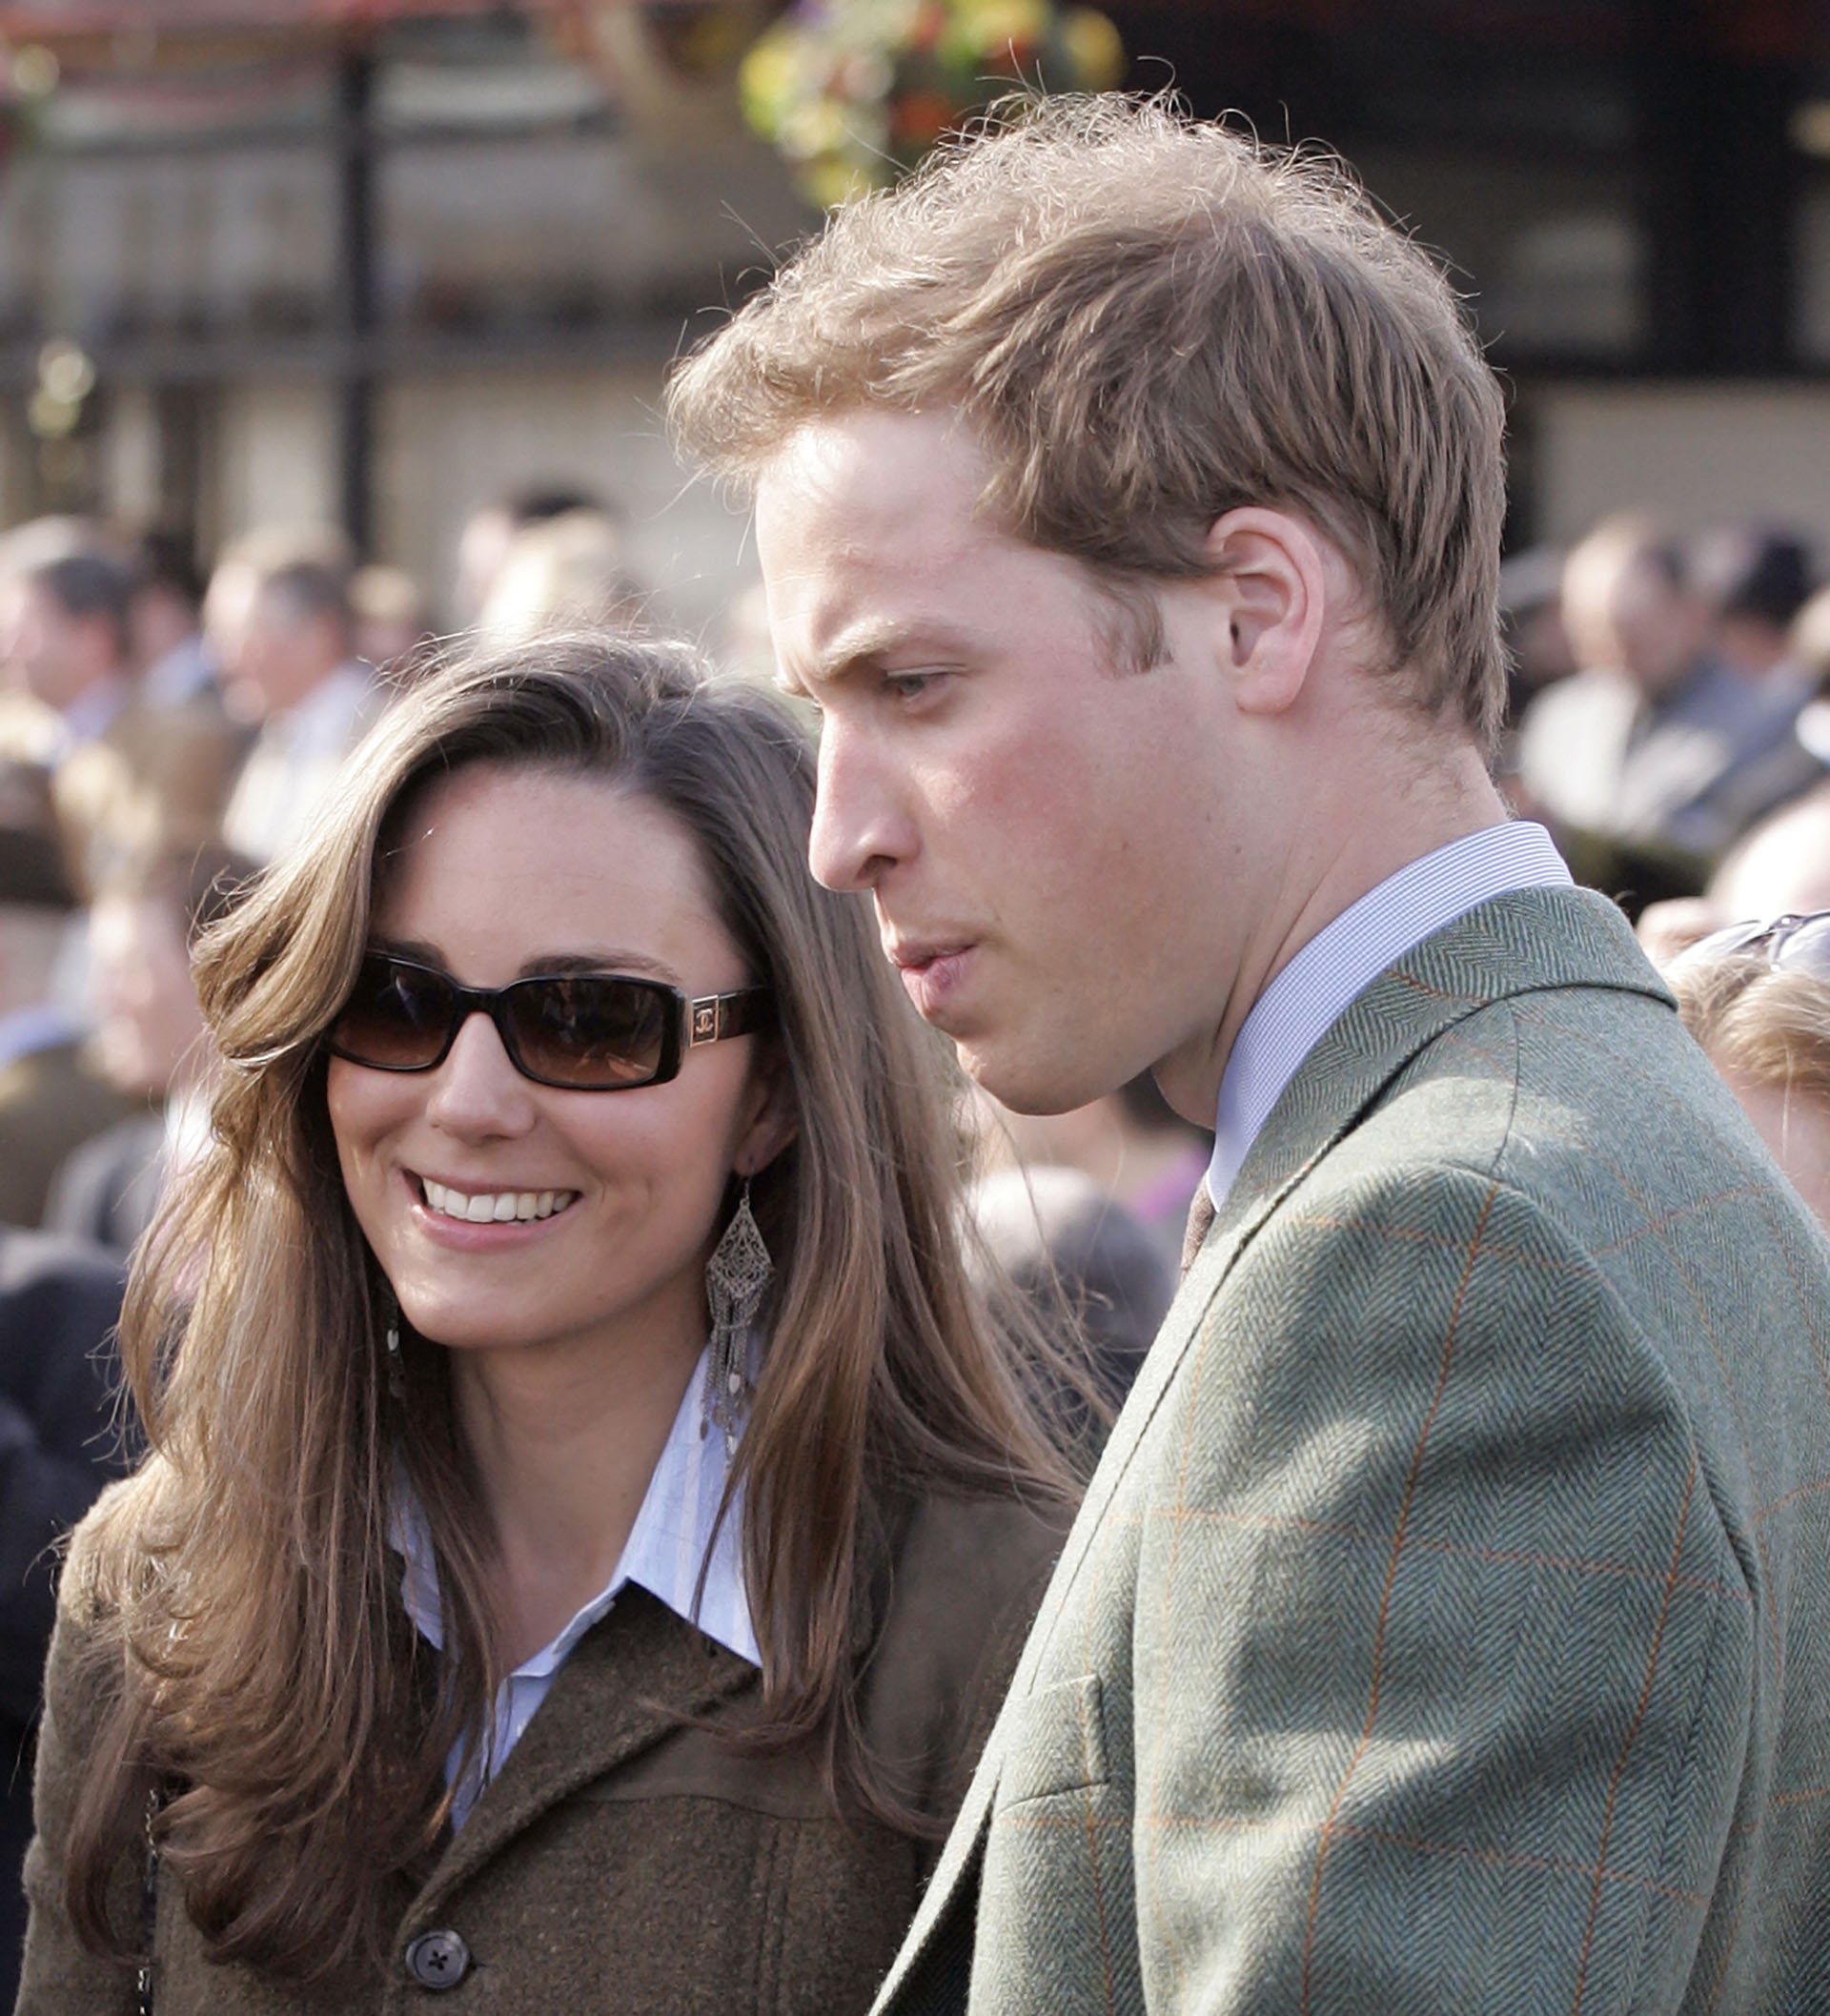 El duque de Cambridge, como su padre es muy reservado públicamente. Solo se le conoció un amor y con ella se casó, Kate Middleton (Indigo/Getty Images)